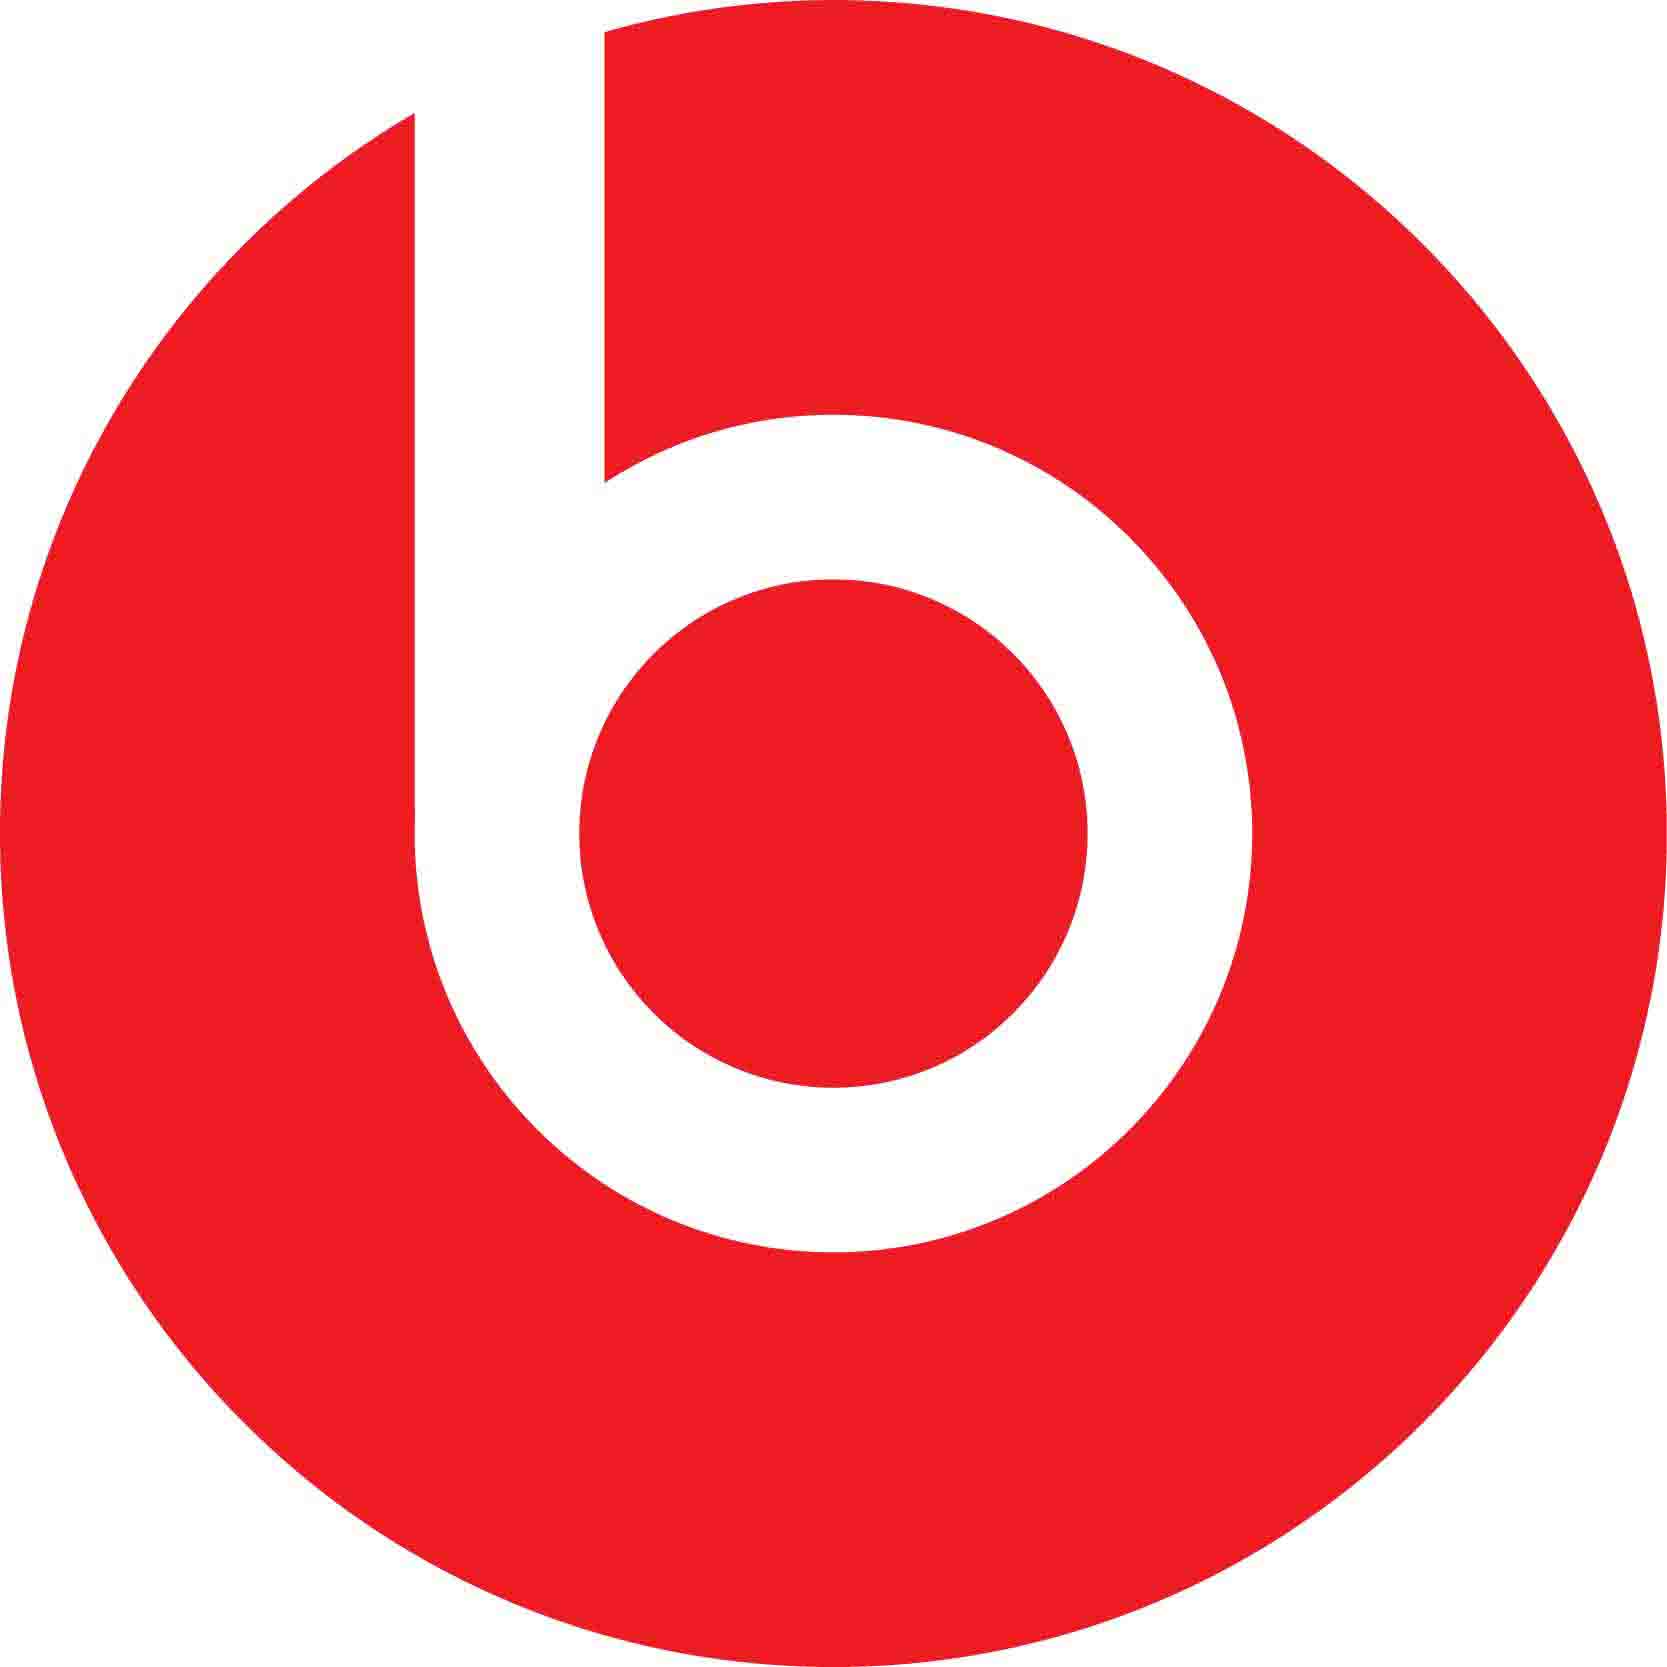 beats耳机最原始使用红黑配色,因此logo也以红黑配色,同时中间的「b」